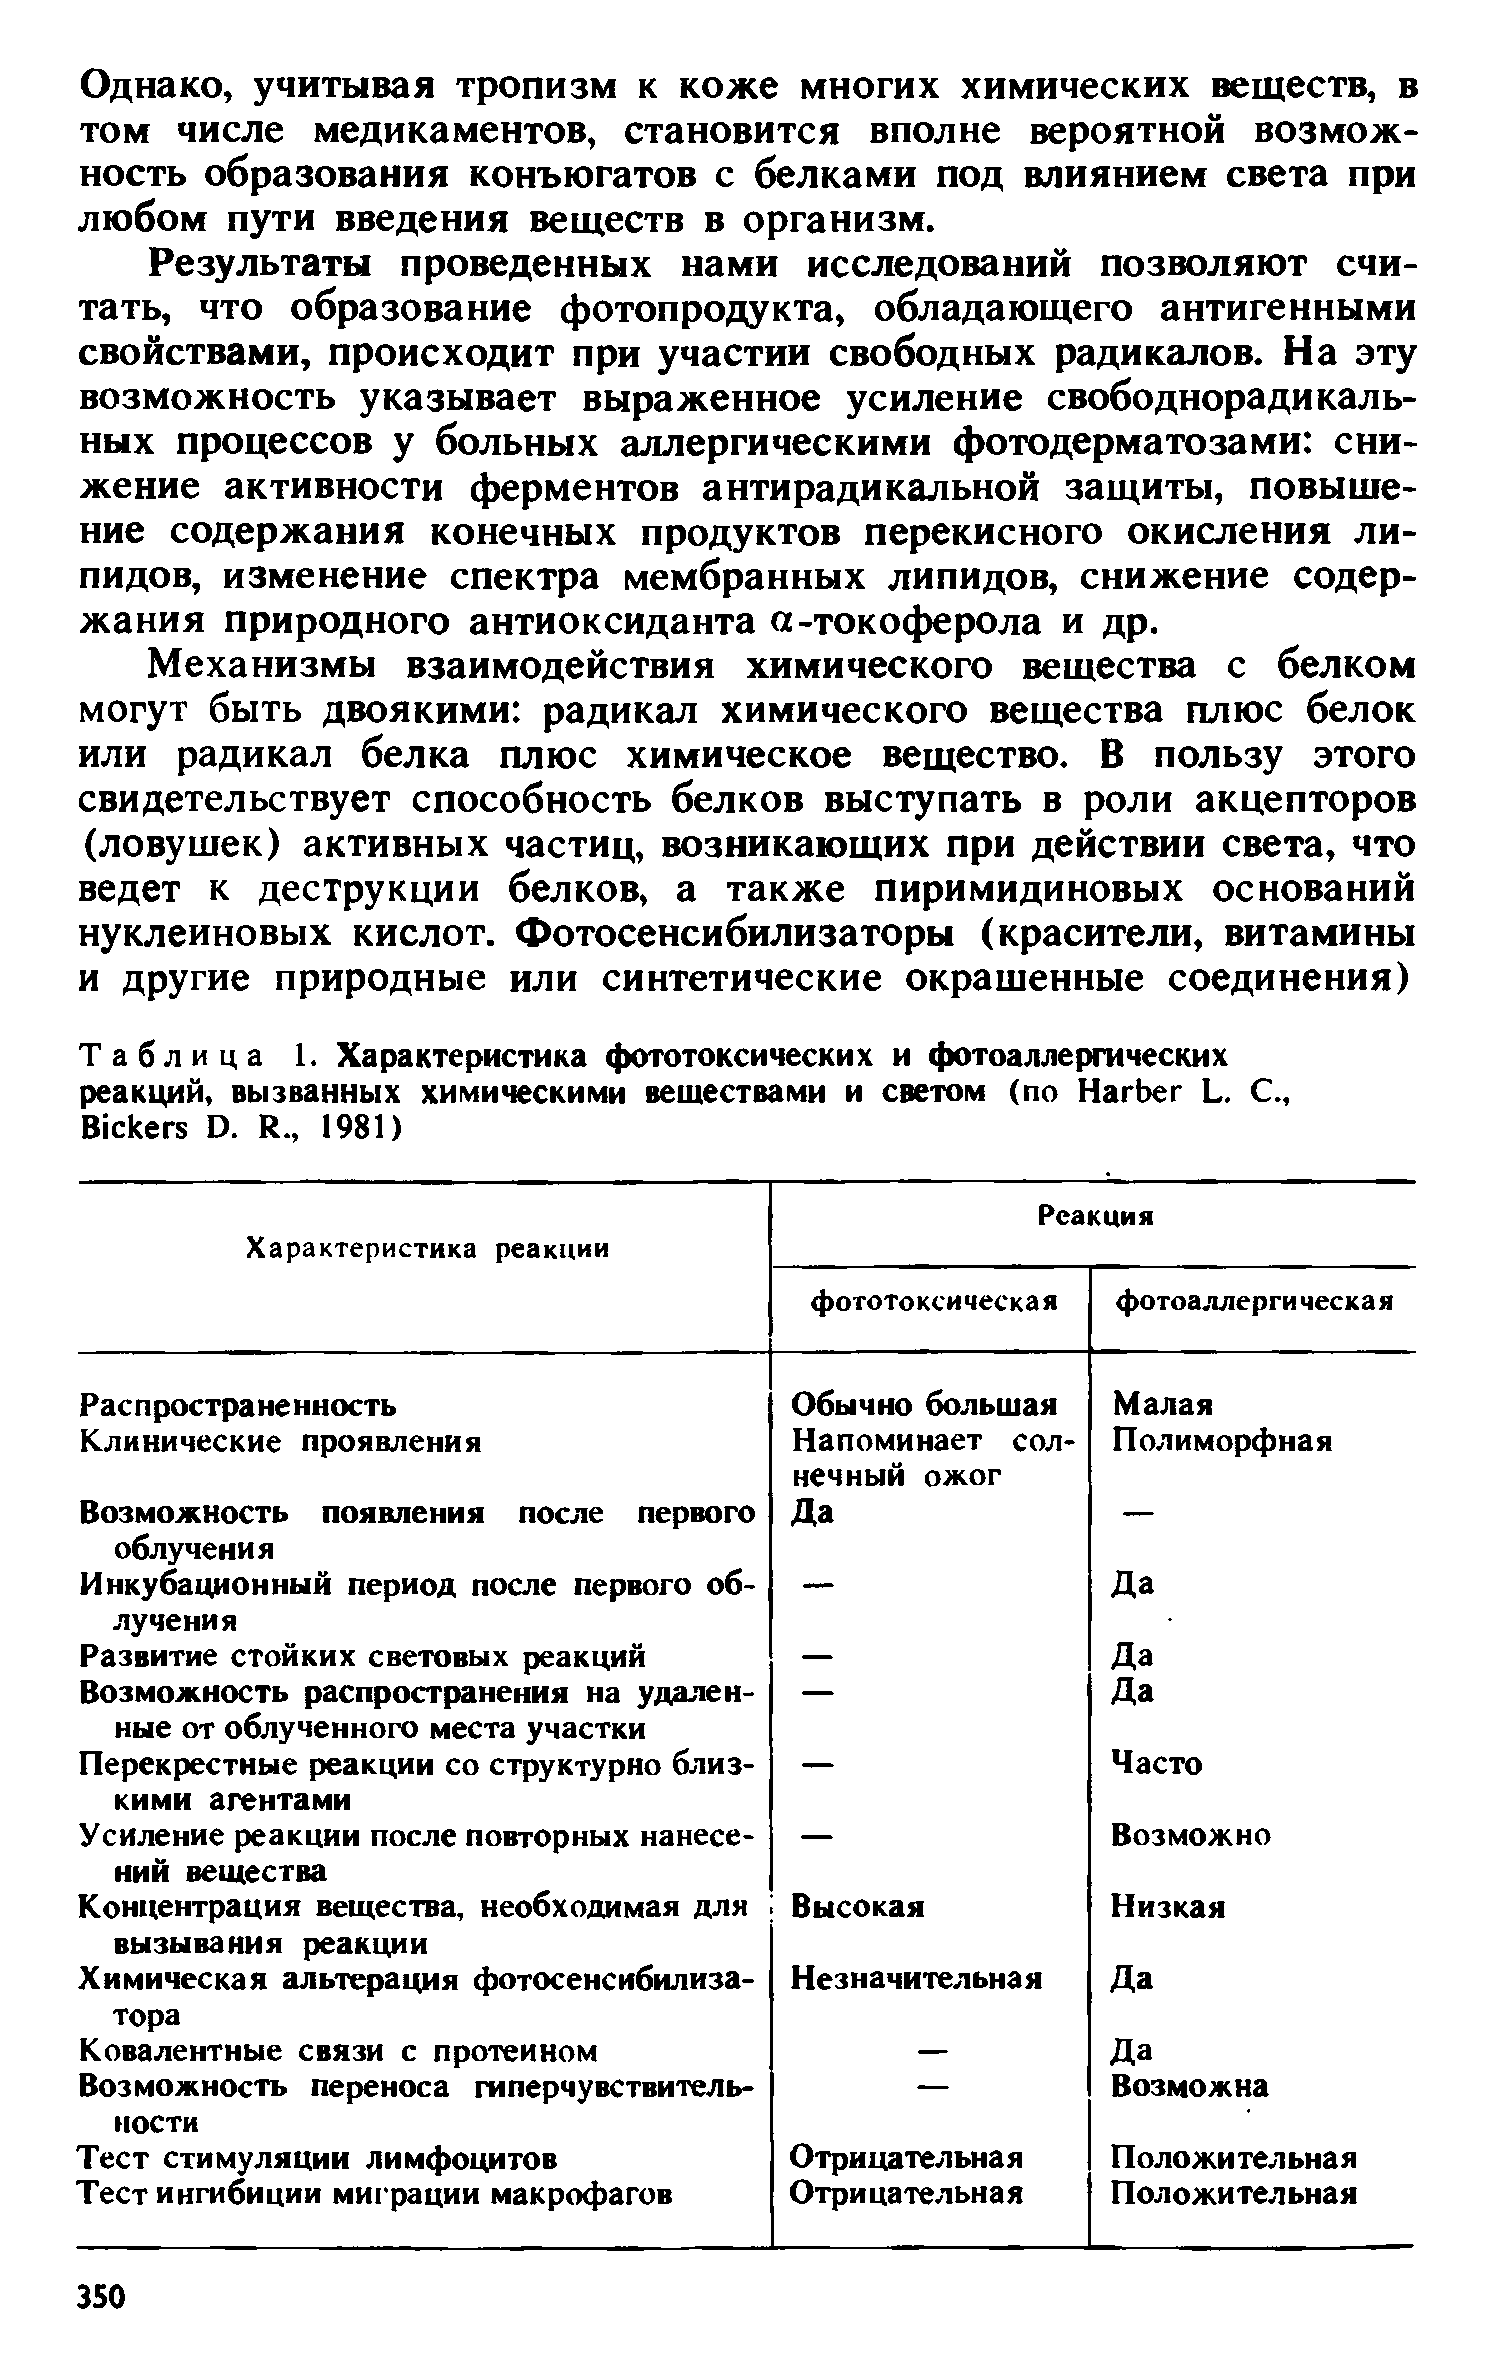 Таблица 1. Характеристика фототоксических и фотоаллергических реакций, вызванных химическими веществами и светом (по H L. С., B D. R., 1981)...